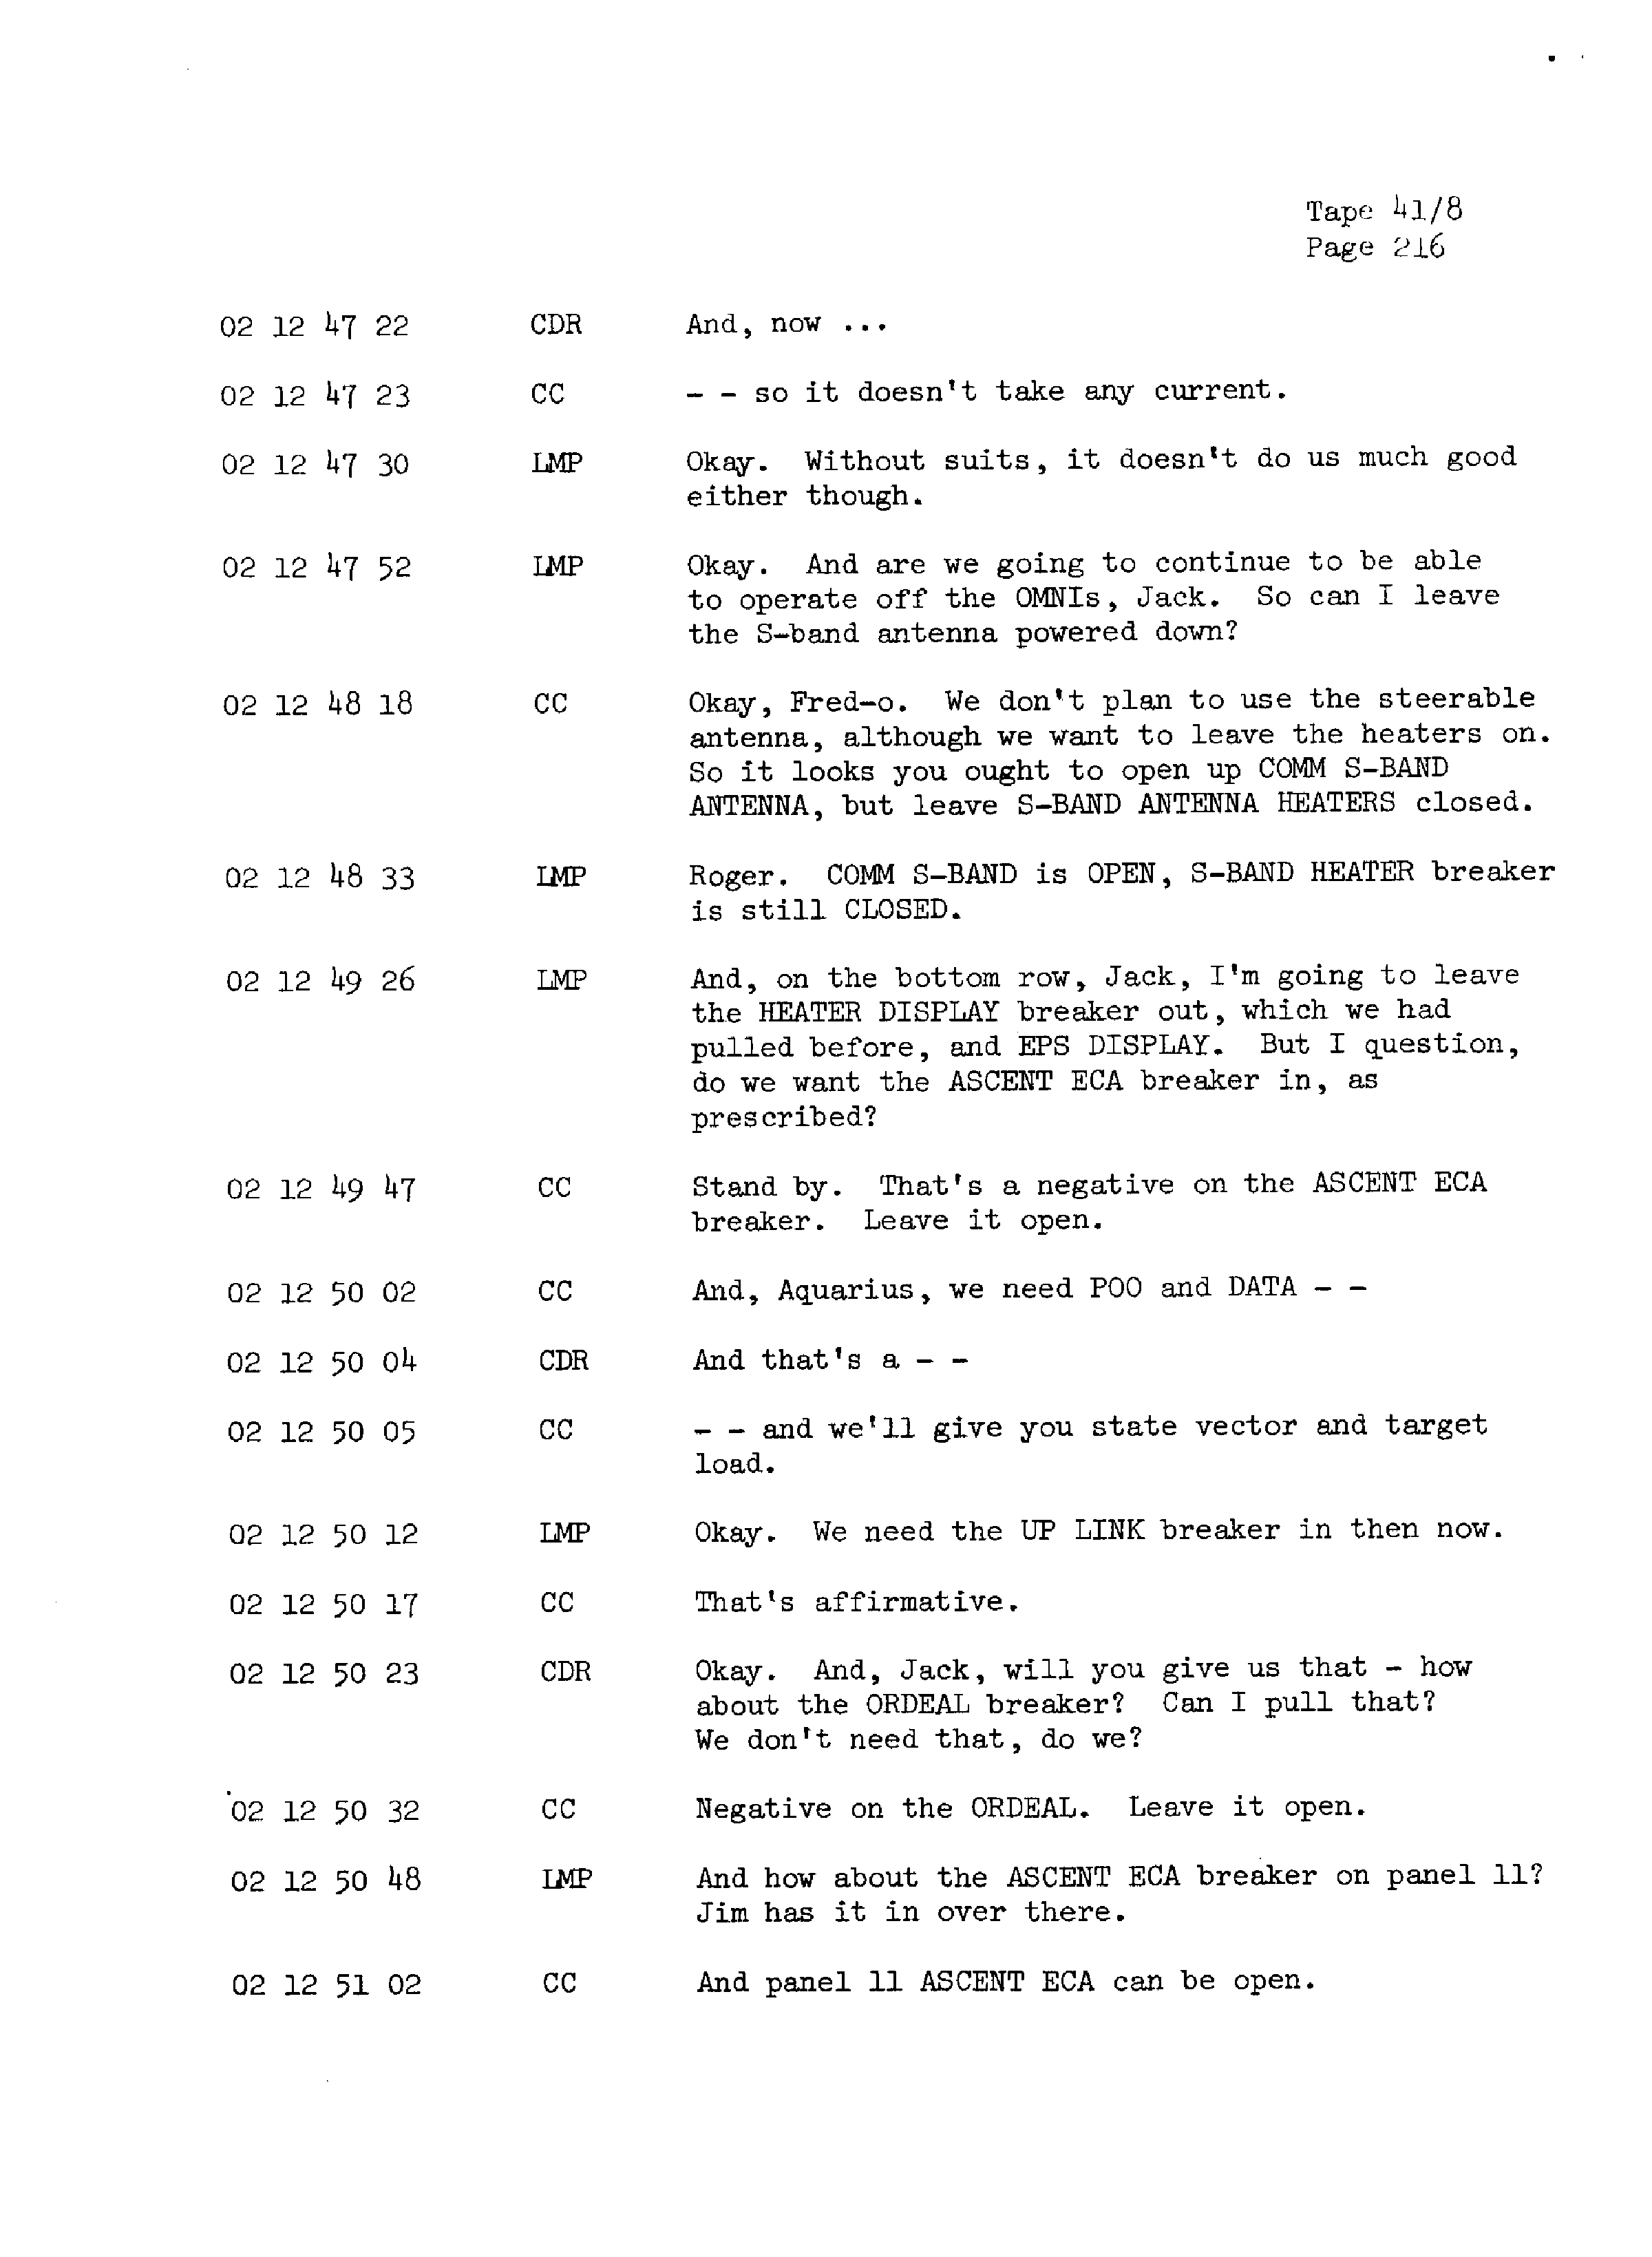 Page 223 of Apollo 13’s original transcript